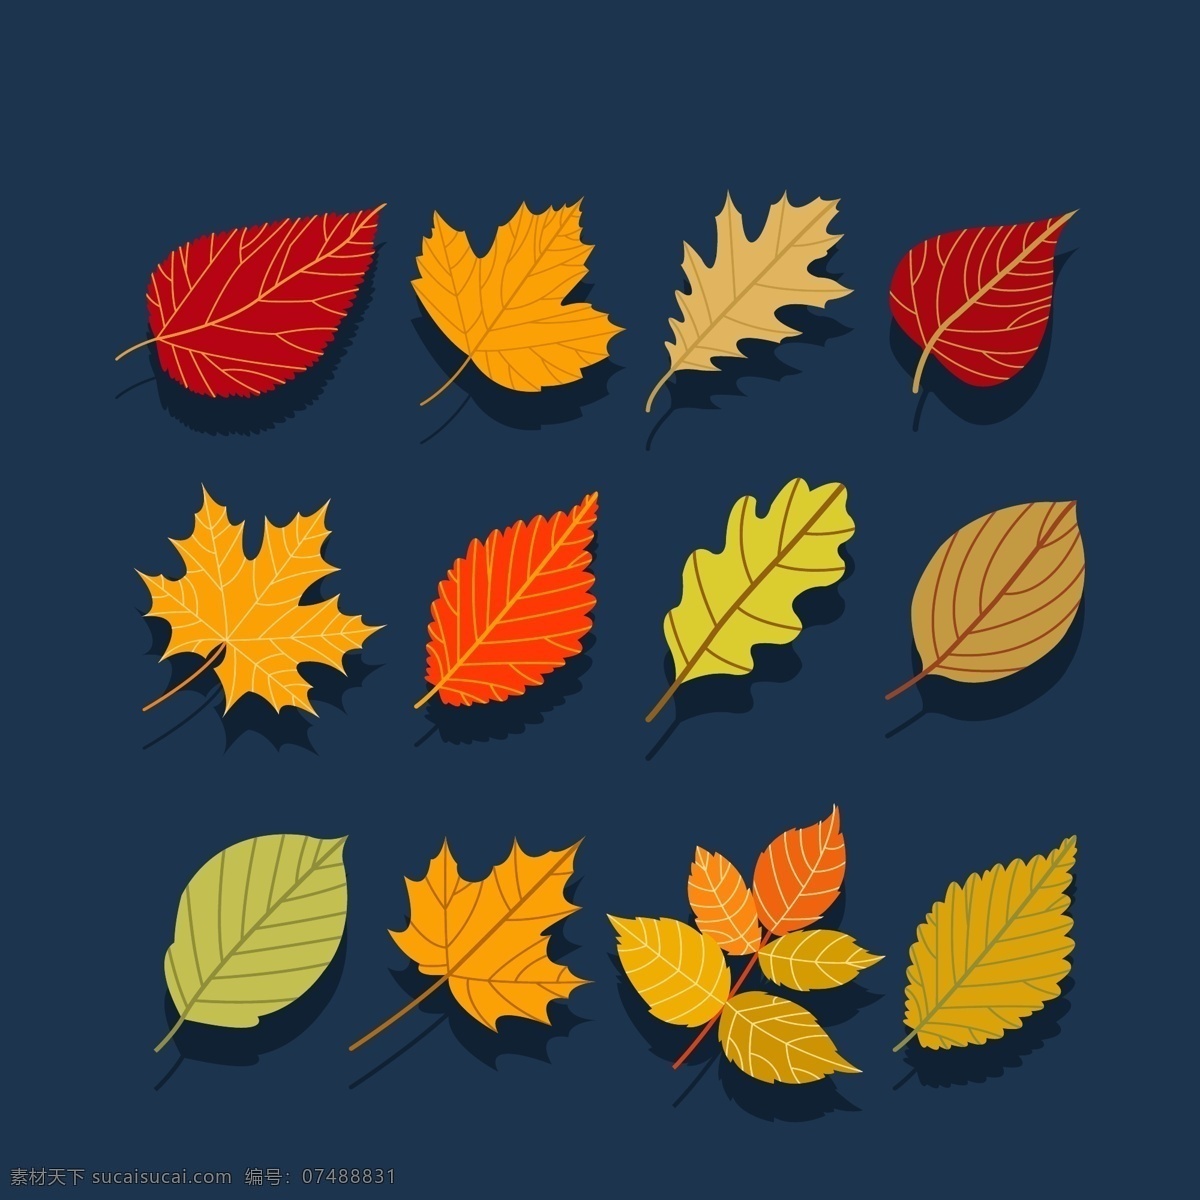 树叶 不同 造型设计 枫叶 矢量素材 设计素材 平面素材 桑叶 松叶 桦树叶